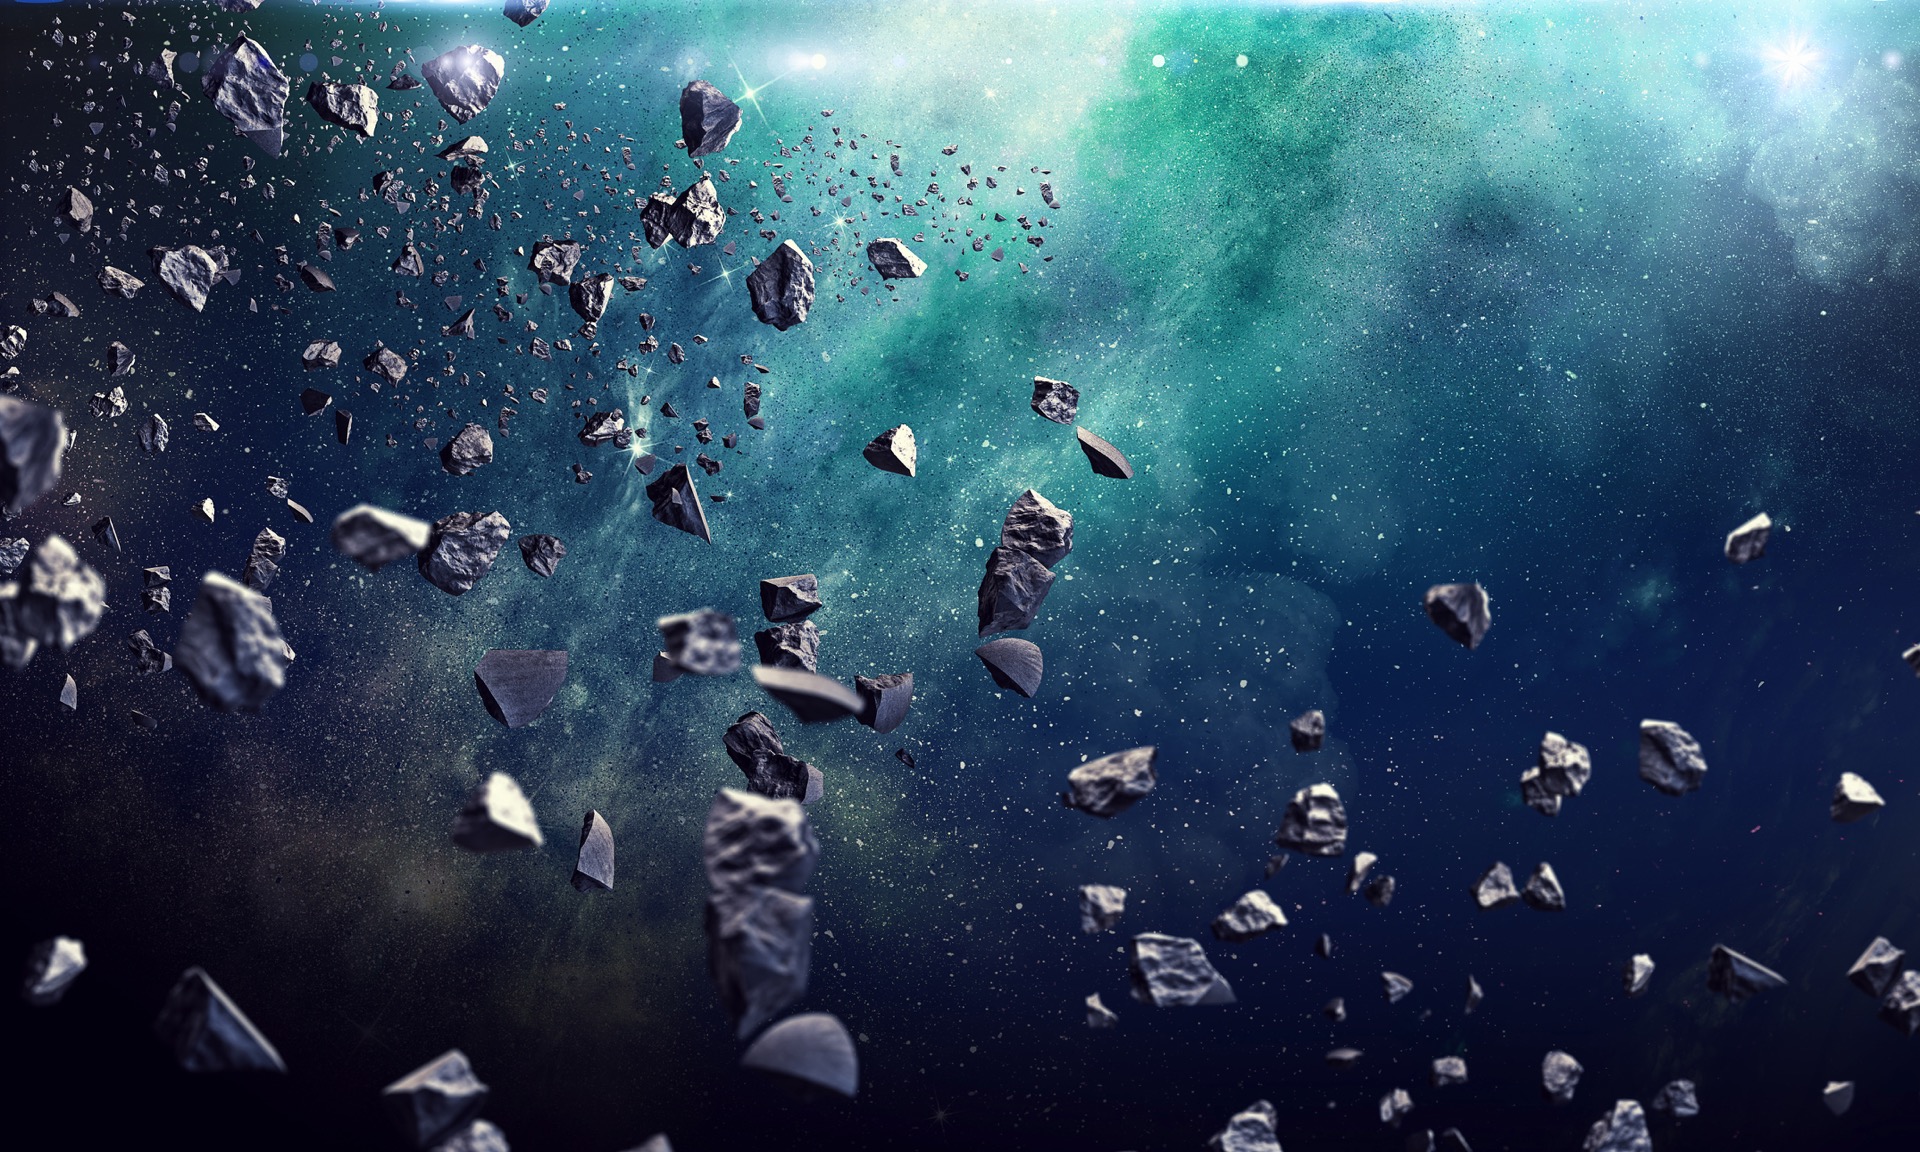 Soumis à l’effet Yorp, les astéroïdes tournent de plus en plus vite et finissent par se briser. © Sergey Nivens, Adobe stock